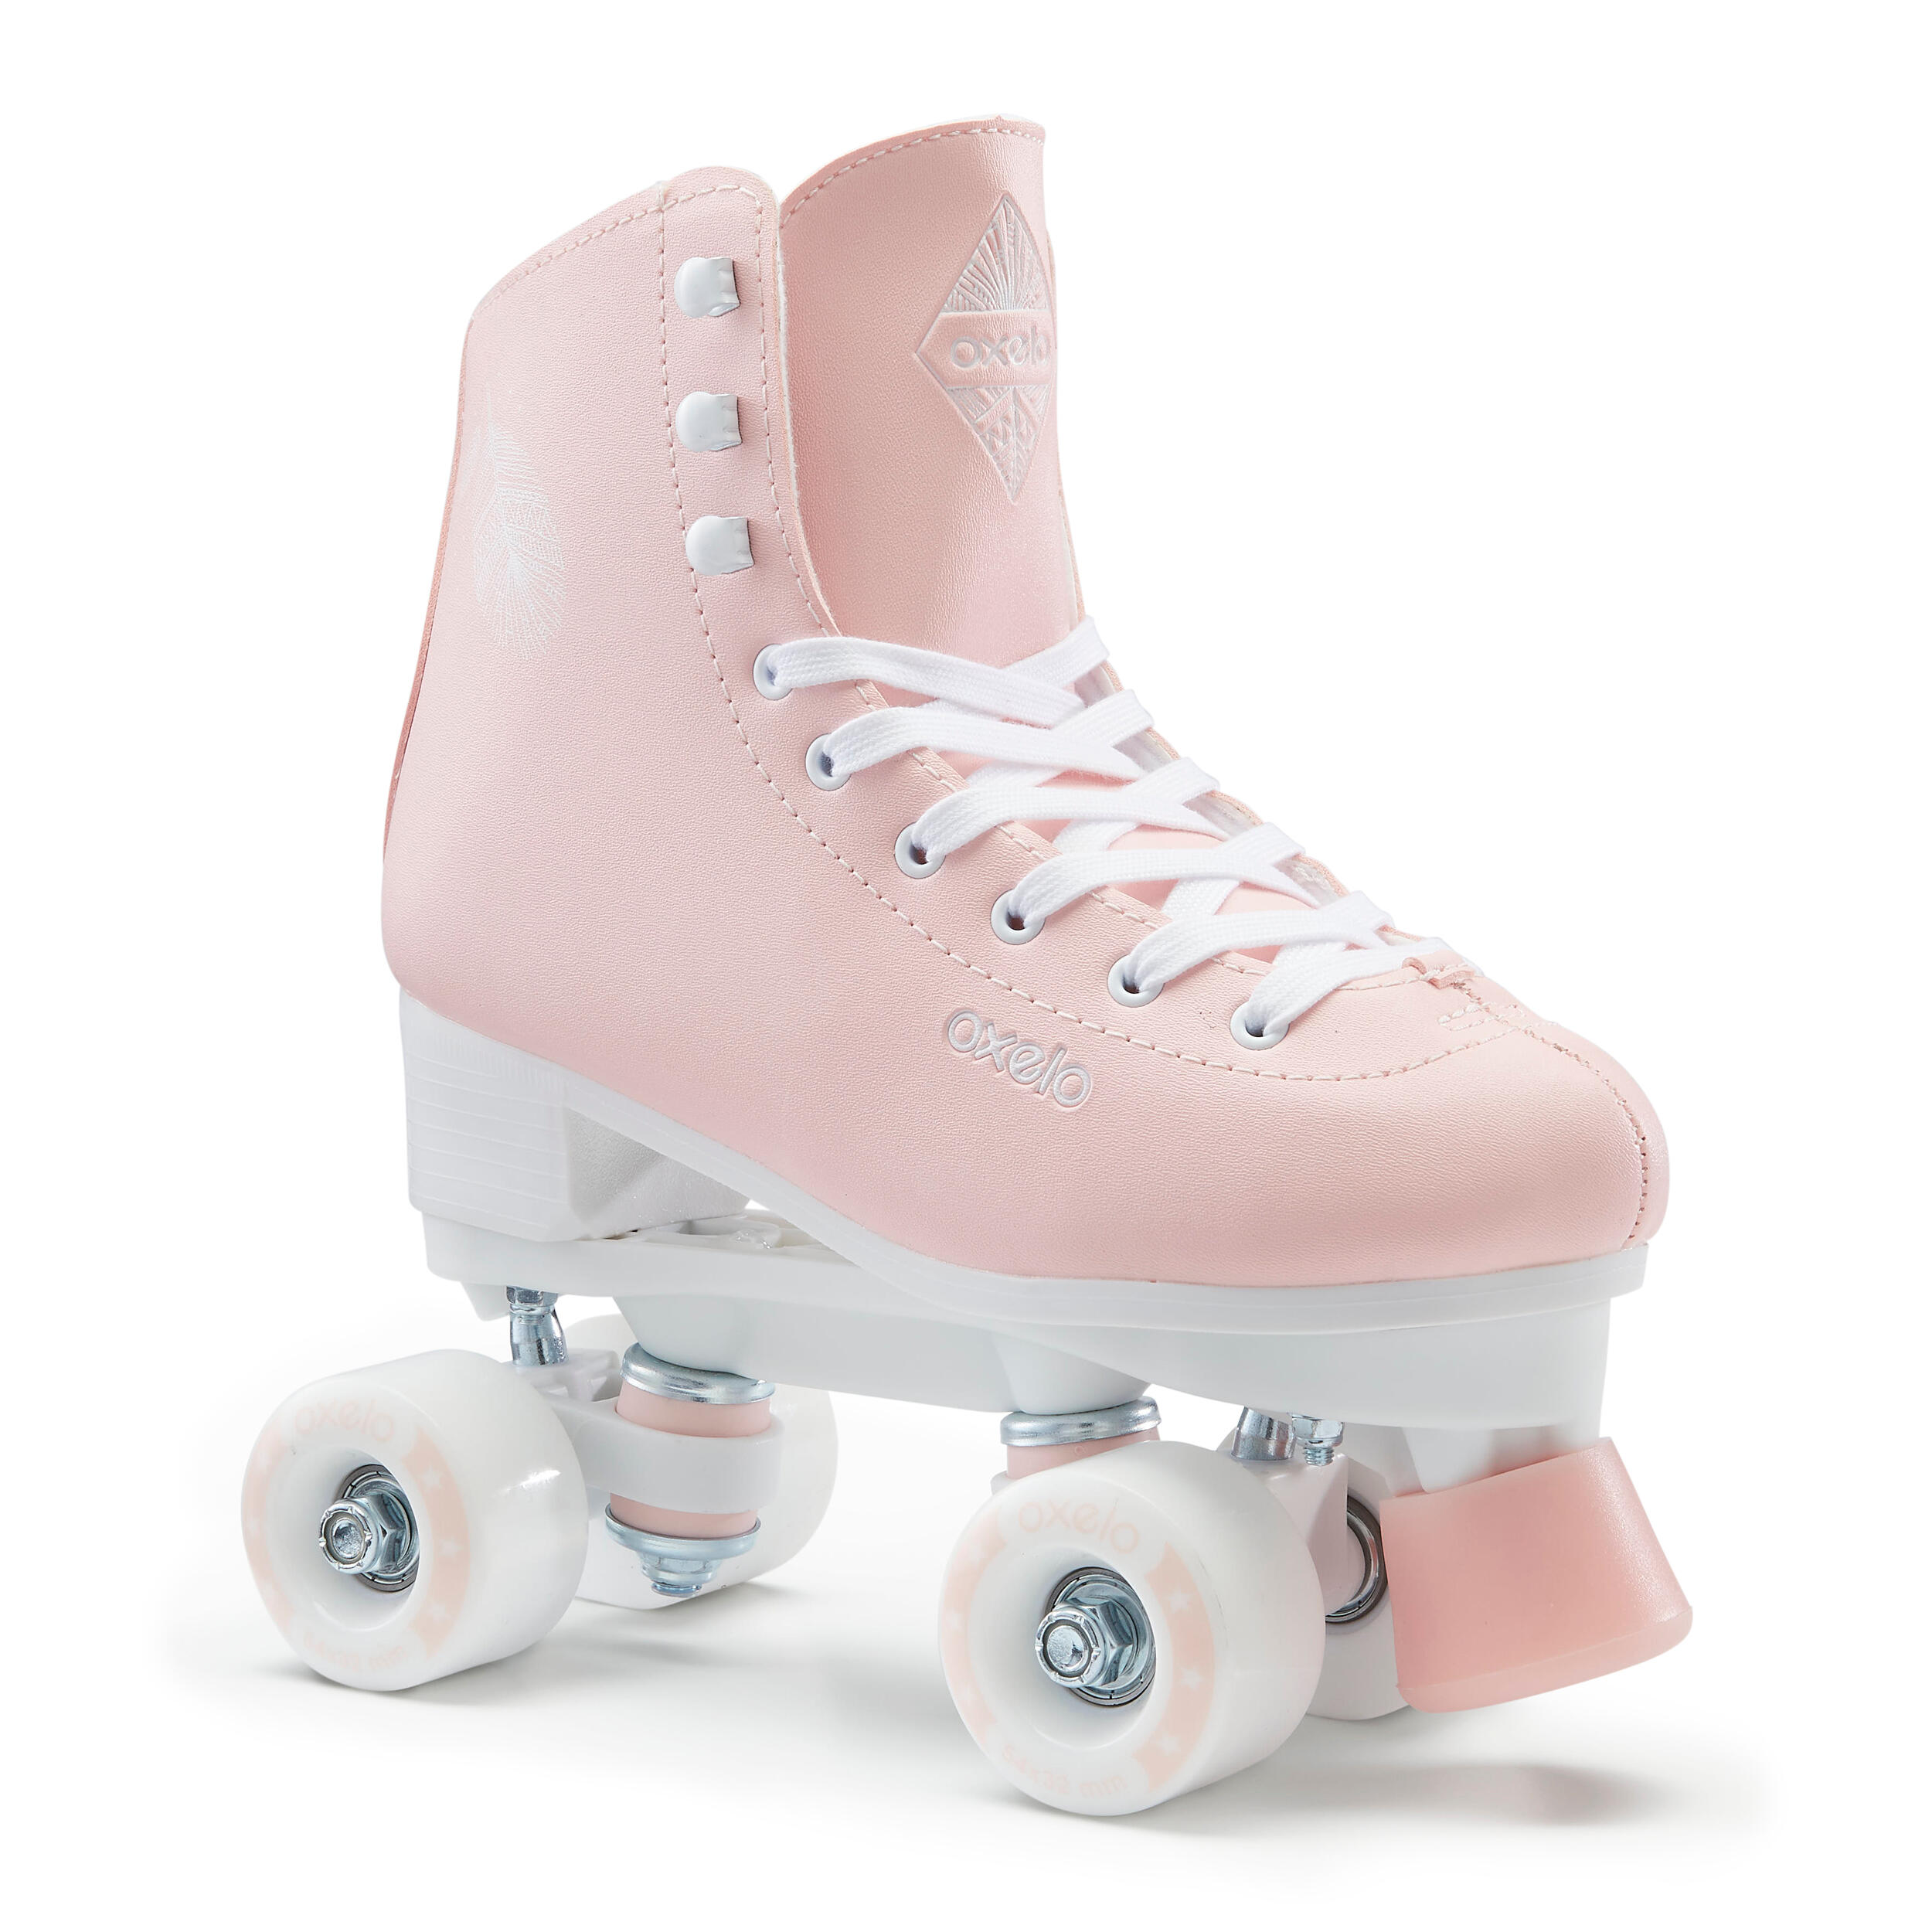 Rollschuhe für Kinder Skates Disco Roller Rollerskates Quad Retro Kinder Inliner 